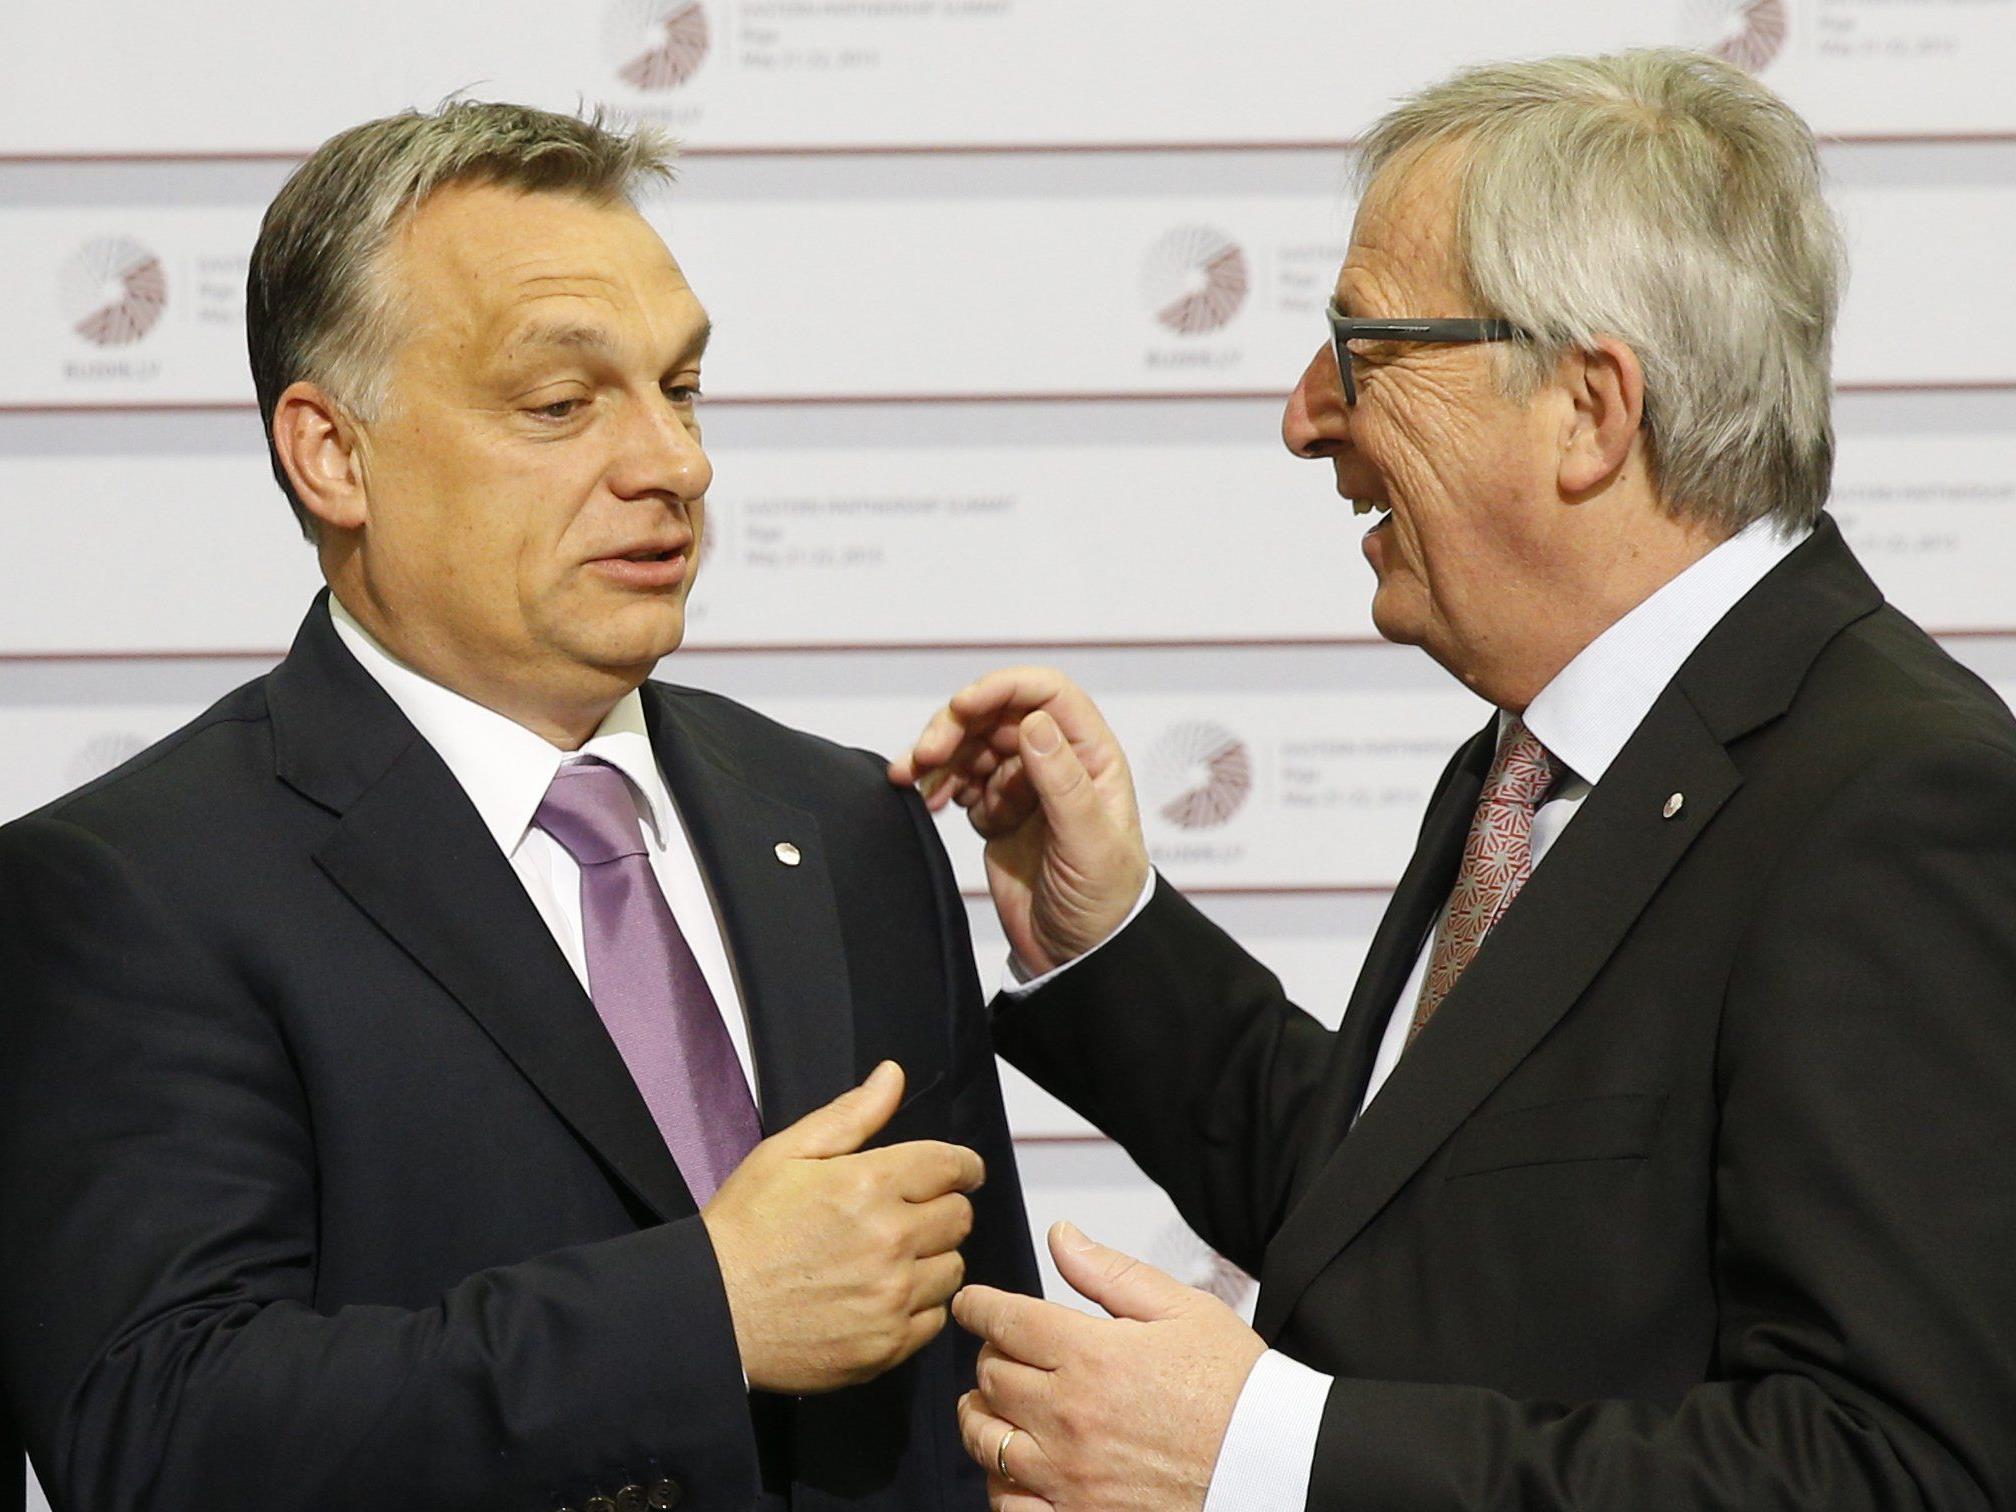 Durchaus provokant begrüßte ein gutgelaunter Juncker Orban mit "Hallo Diktator".